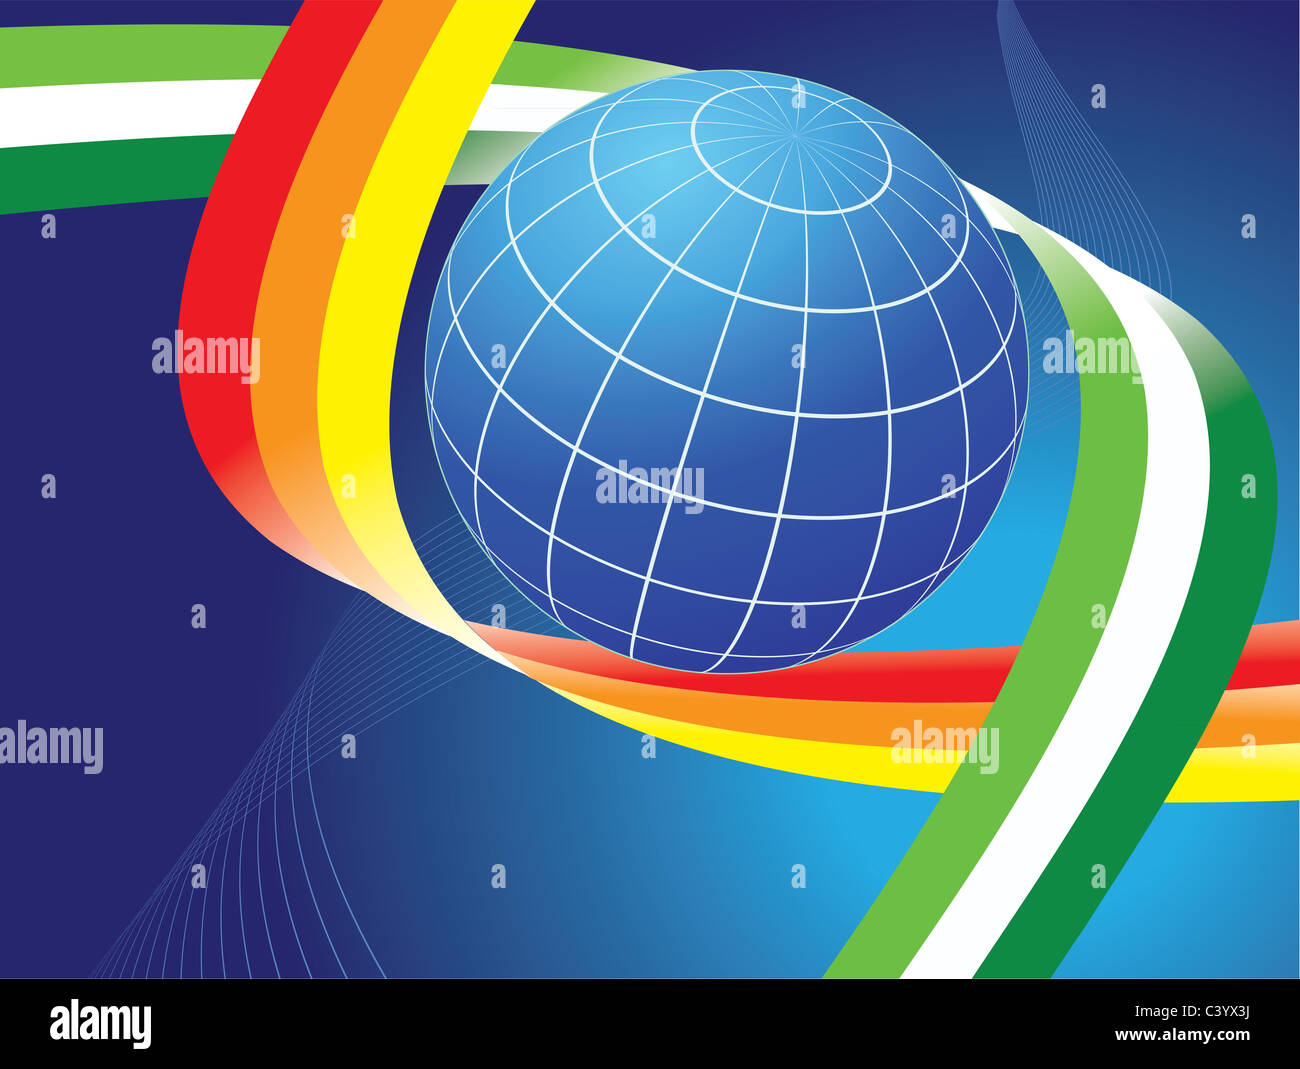 Globo terrestre y curvas de color arcoiris sobre fondo azul oscuro Foto de stock